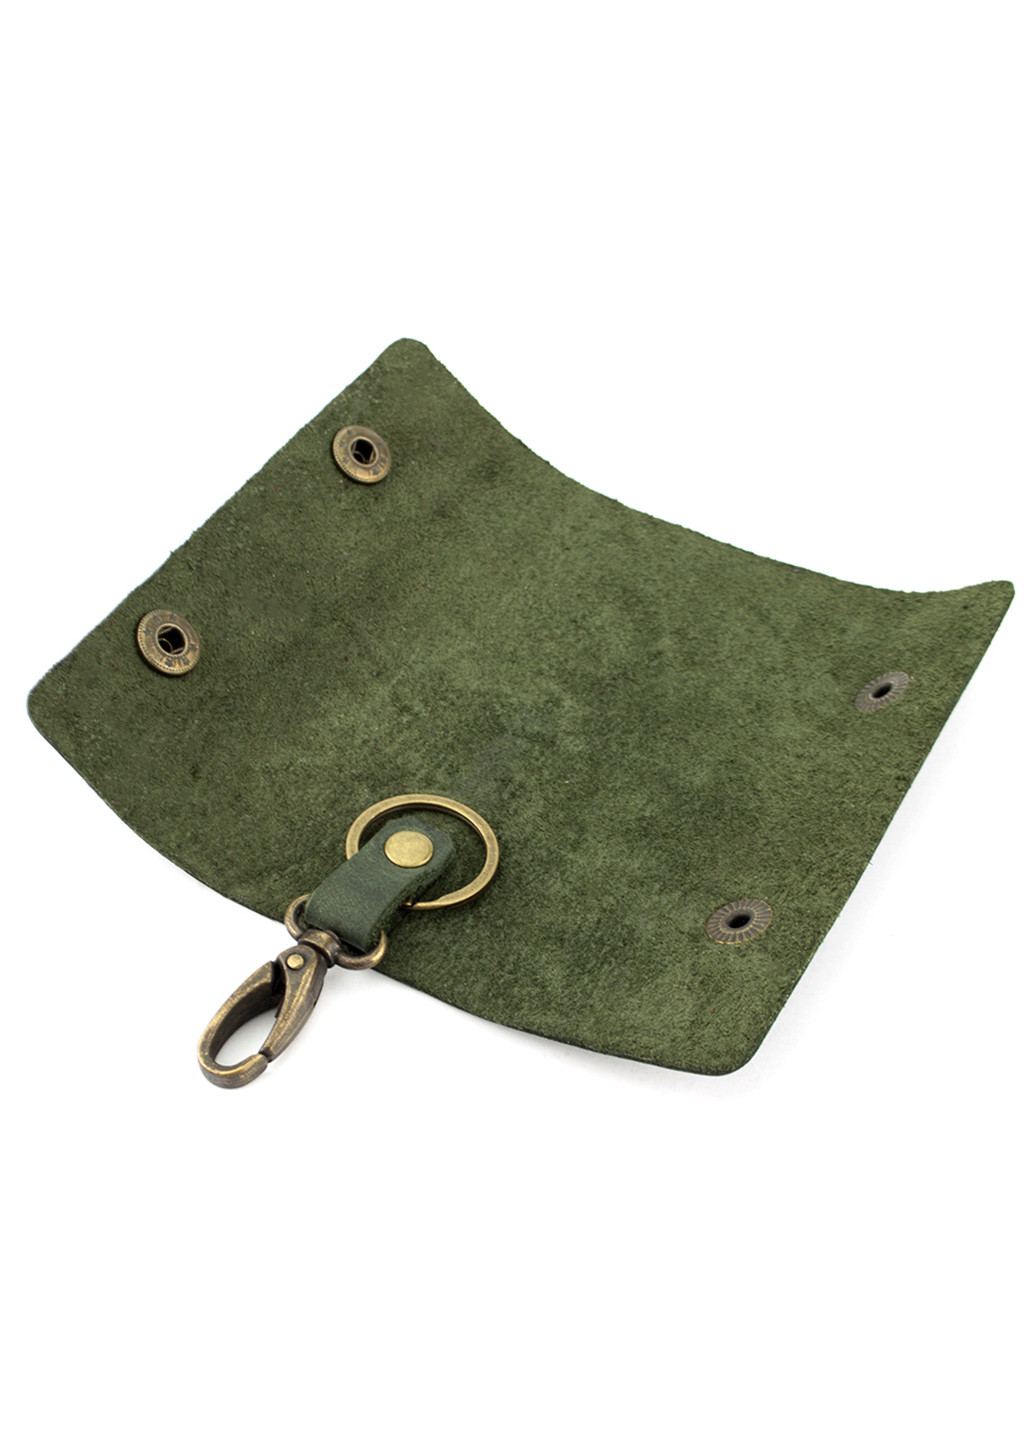 Мужской подарочный набор в коробке №43 зеленый (ключница, обложка на ID паспорт) HandyCover (206210425)